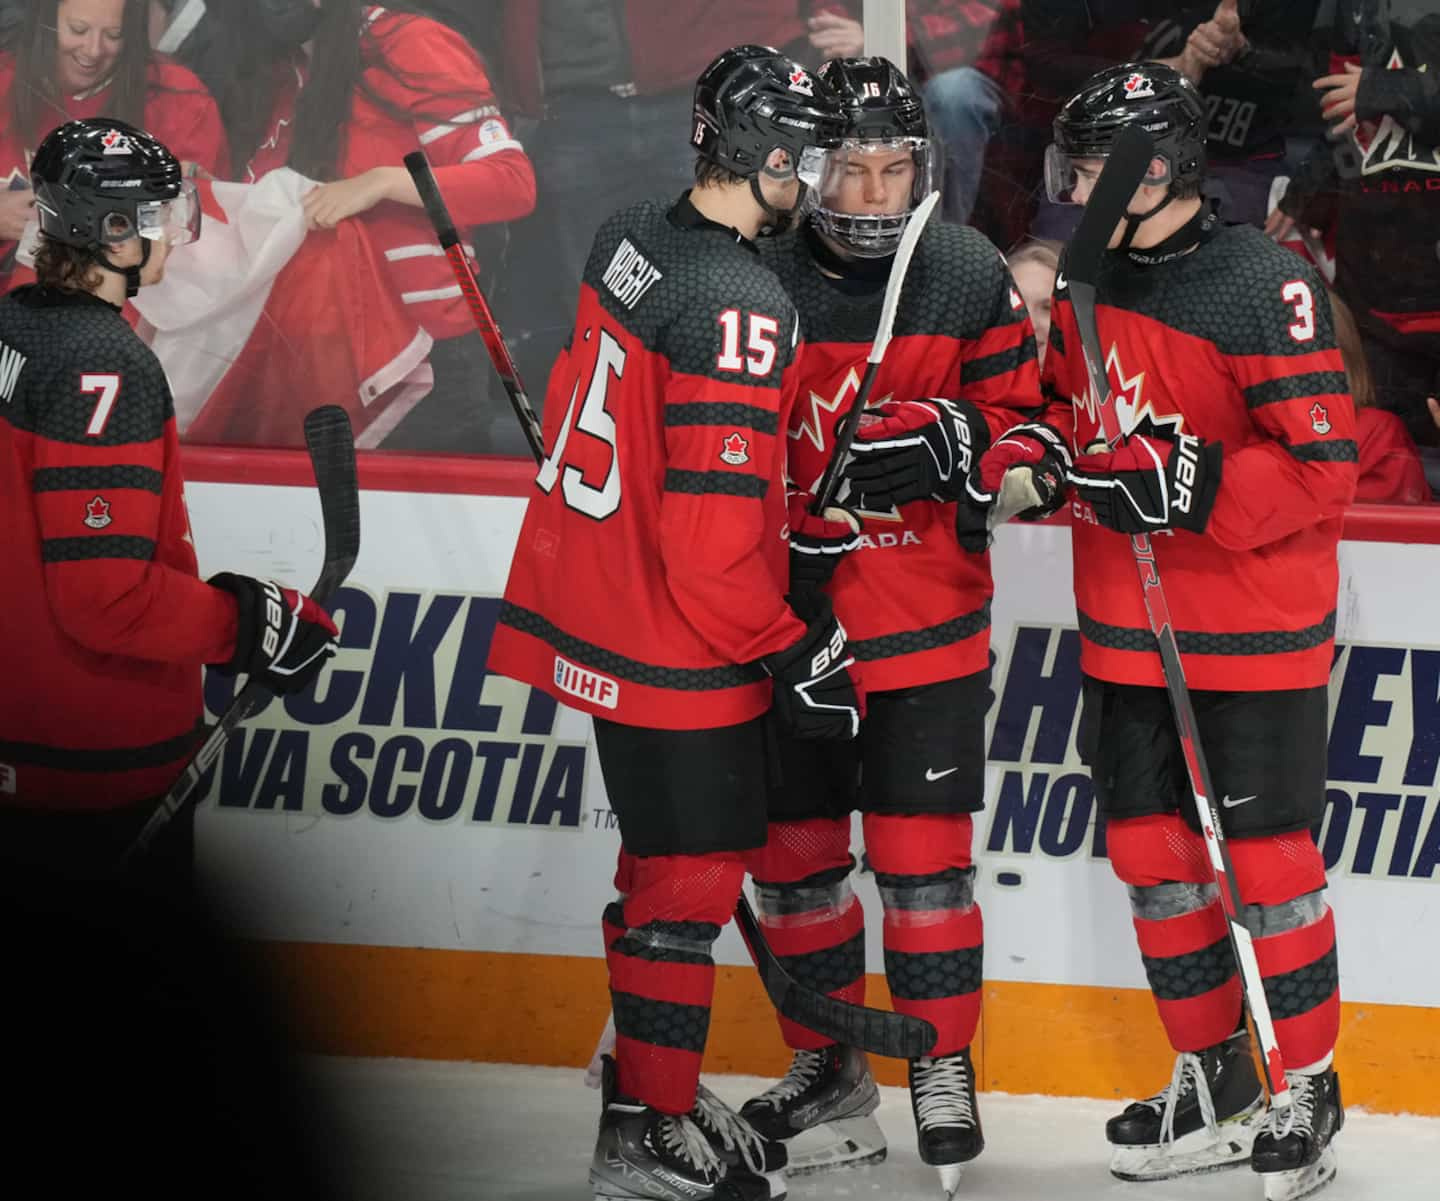 World Junior Hockey Championship: Canada manhandles Sweden